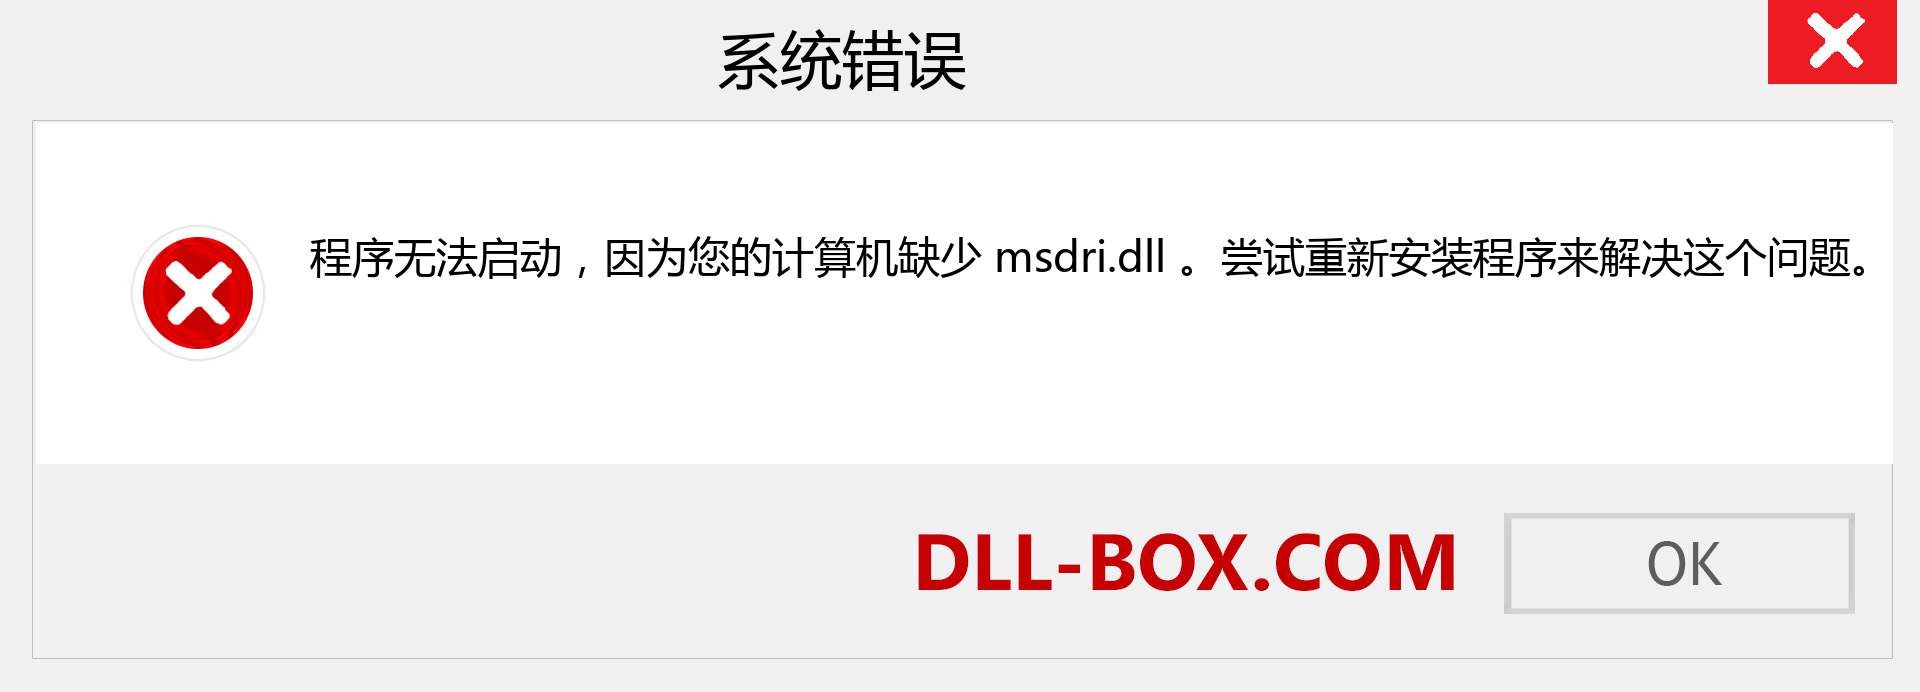 msdri.dll 文件丢失？。 适用于 Windows 7、8、10 的下载 - 修复 Windows、照片、图像上的 msdri dll 丢失错误